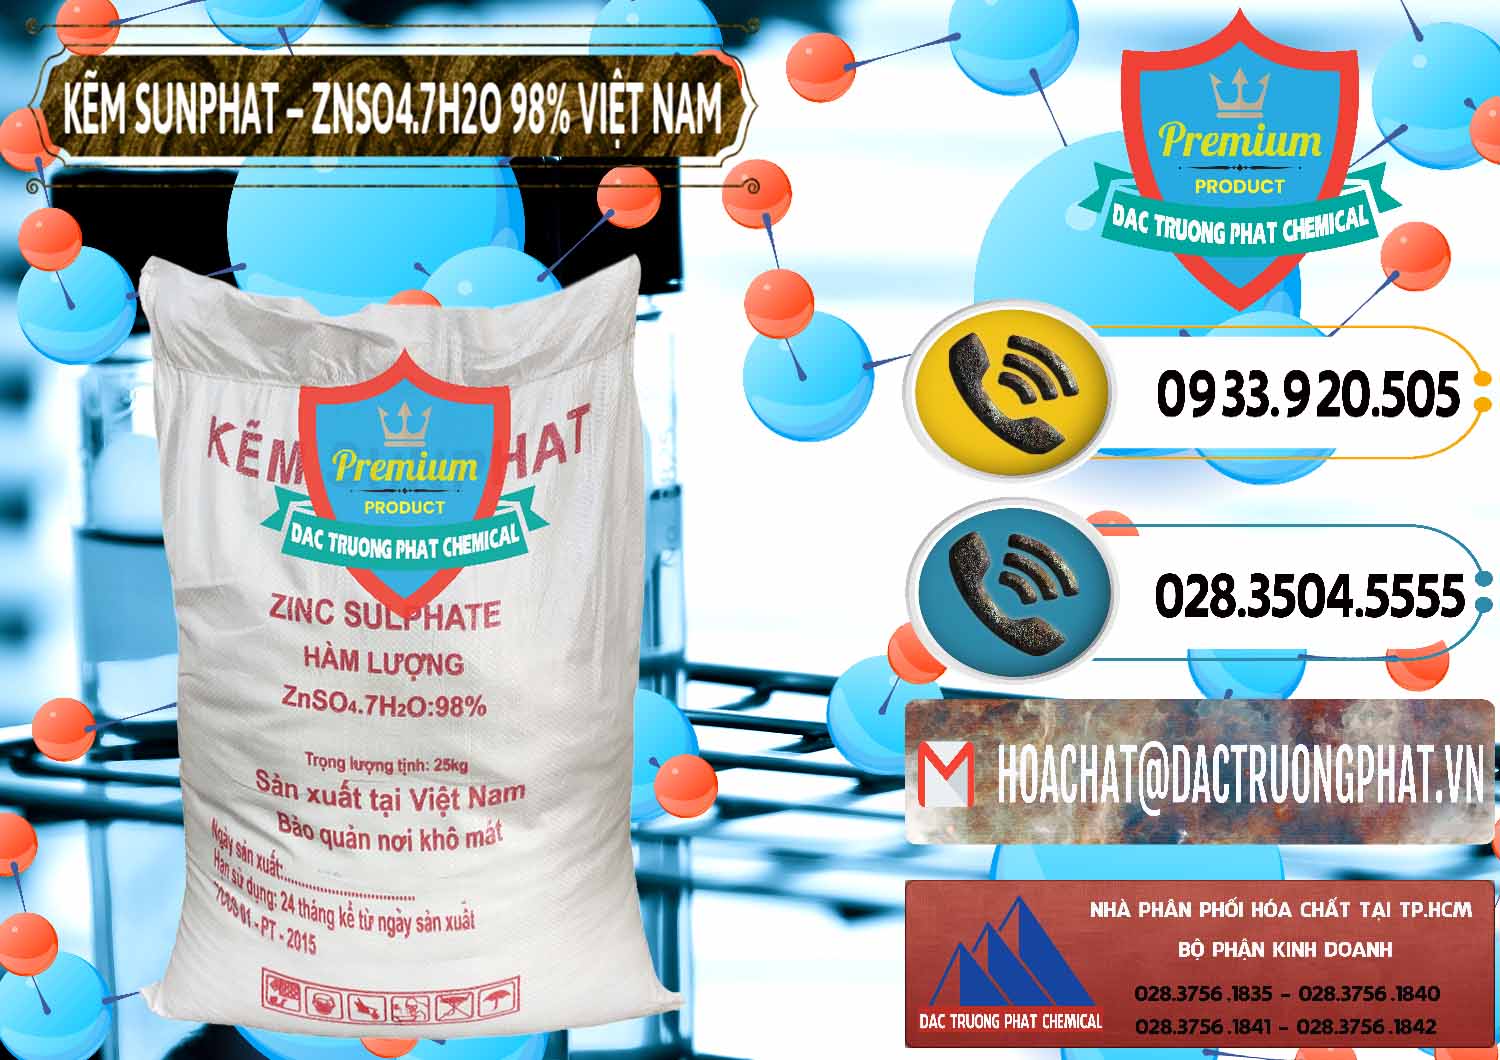 Nơi bán & cung cấp Kẽm Sunfat – ZNSO4.7H2O Việt Nam - 0189 - Nơi chuyên bán và cung cấp hóa chất tại TP.HCM - hoachatdetnhuom.vn